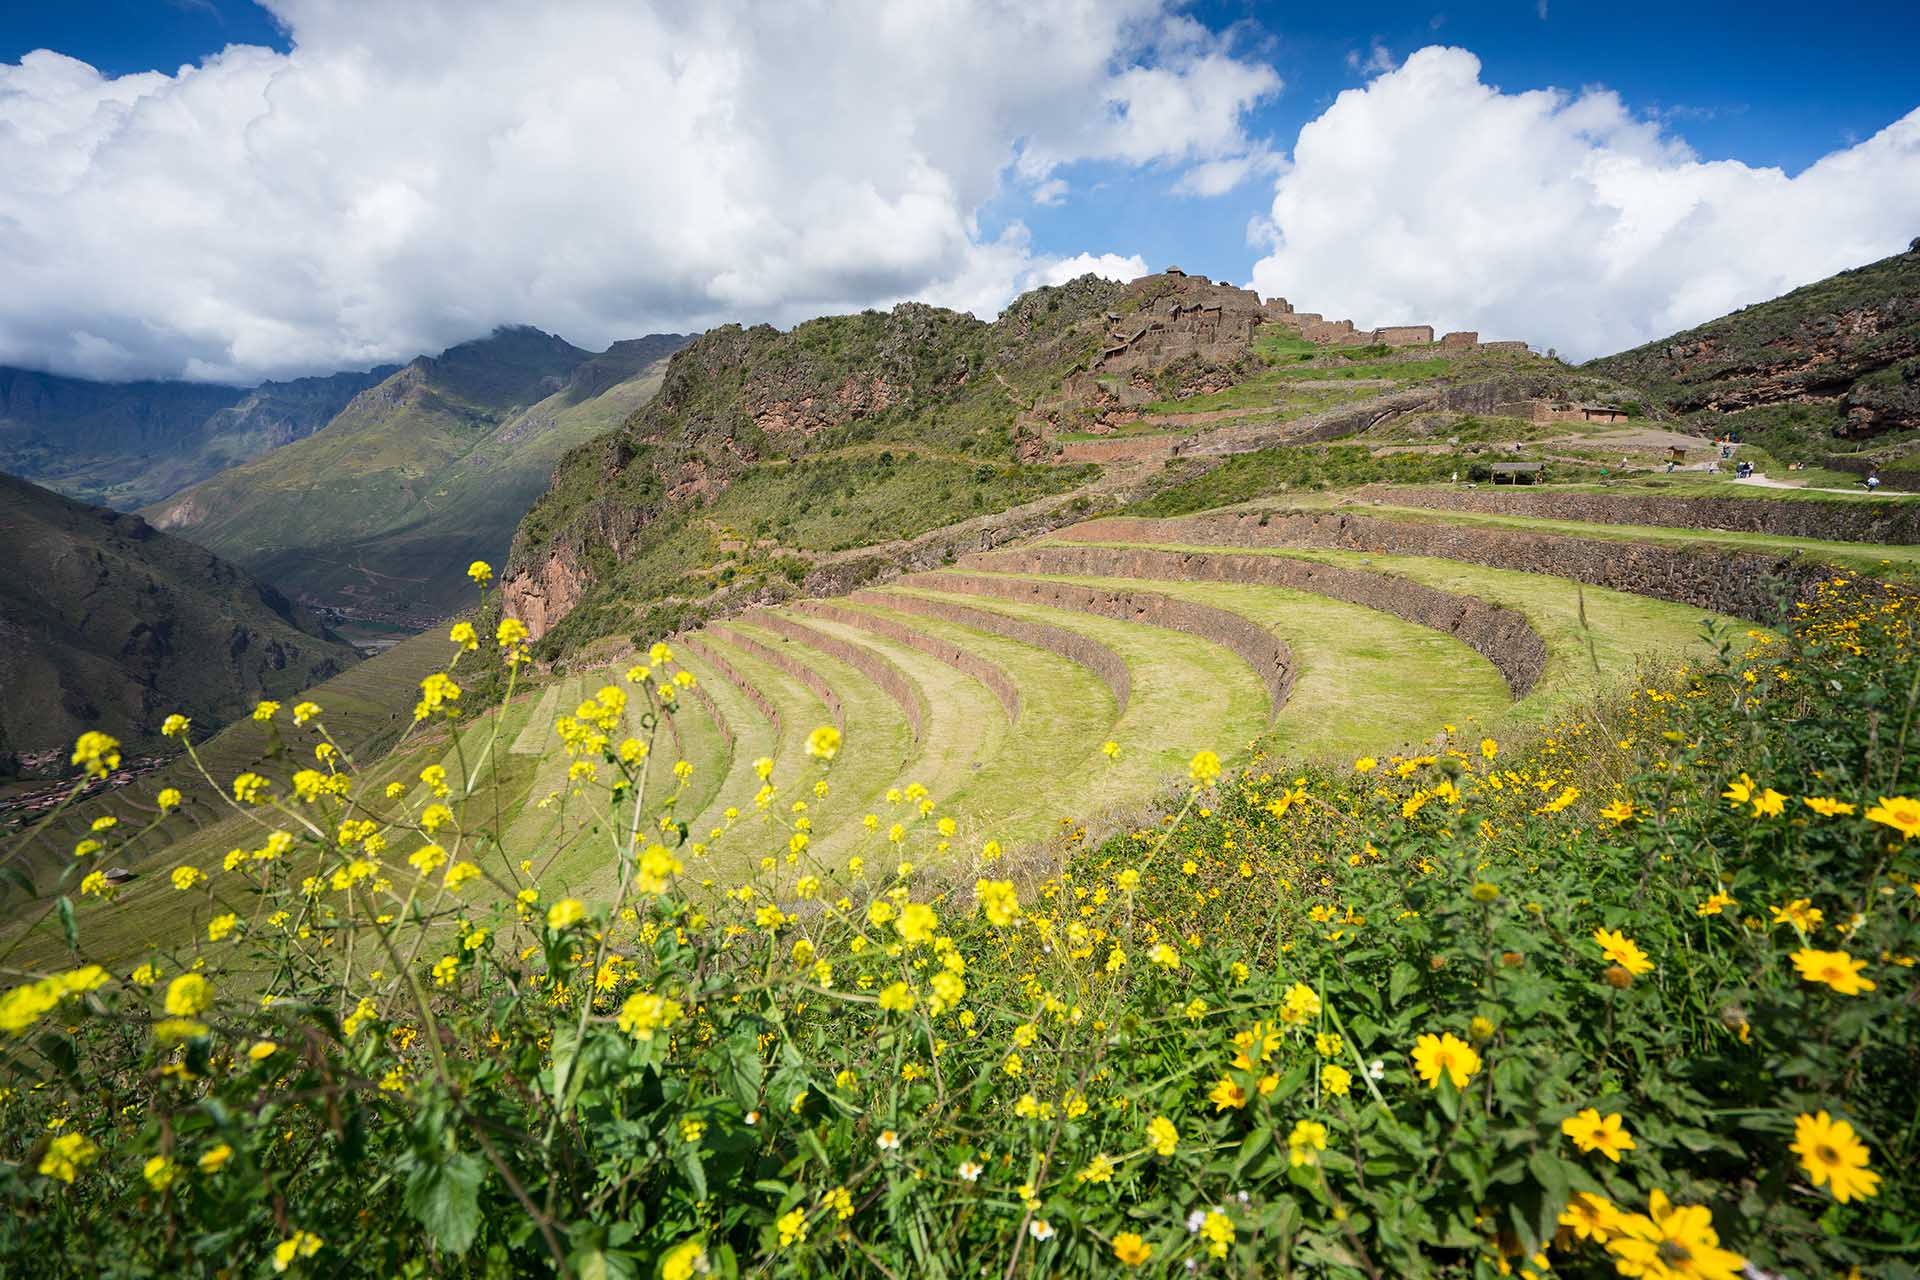 Zien in de Sacred Valley in Peru: drie highlights in één dag